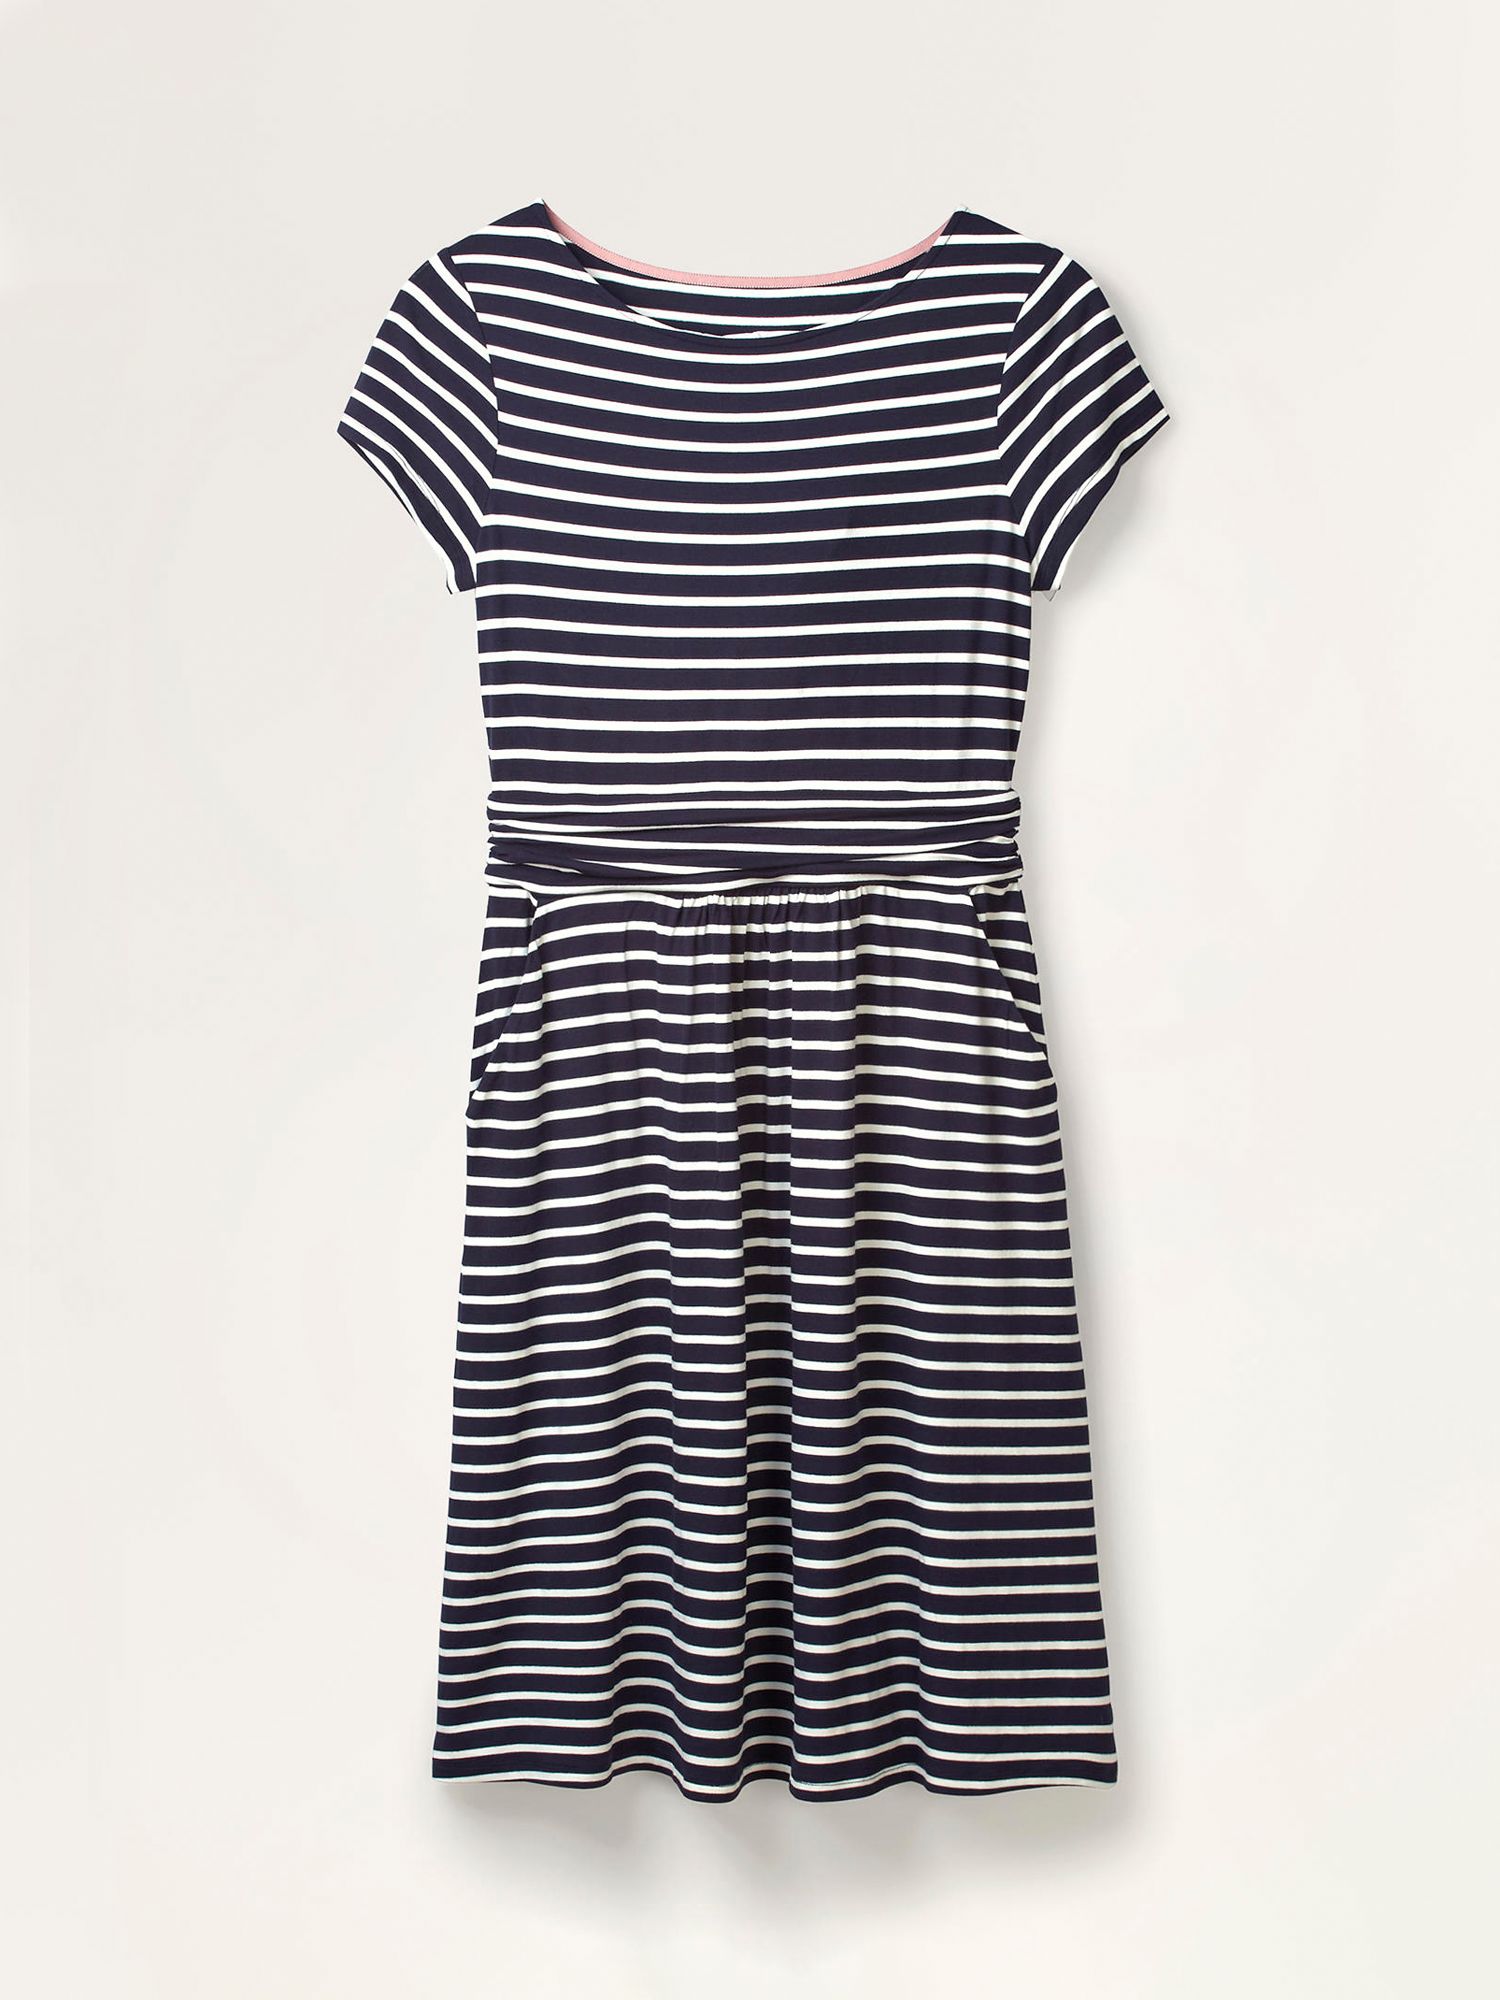 Boden Amelie Jersey Dress, Navy/Ivory, 8